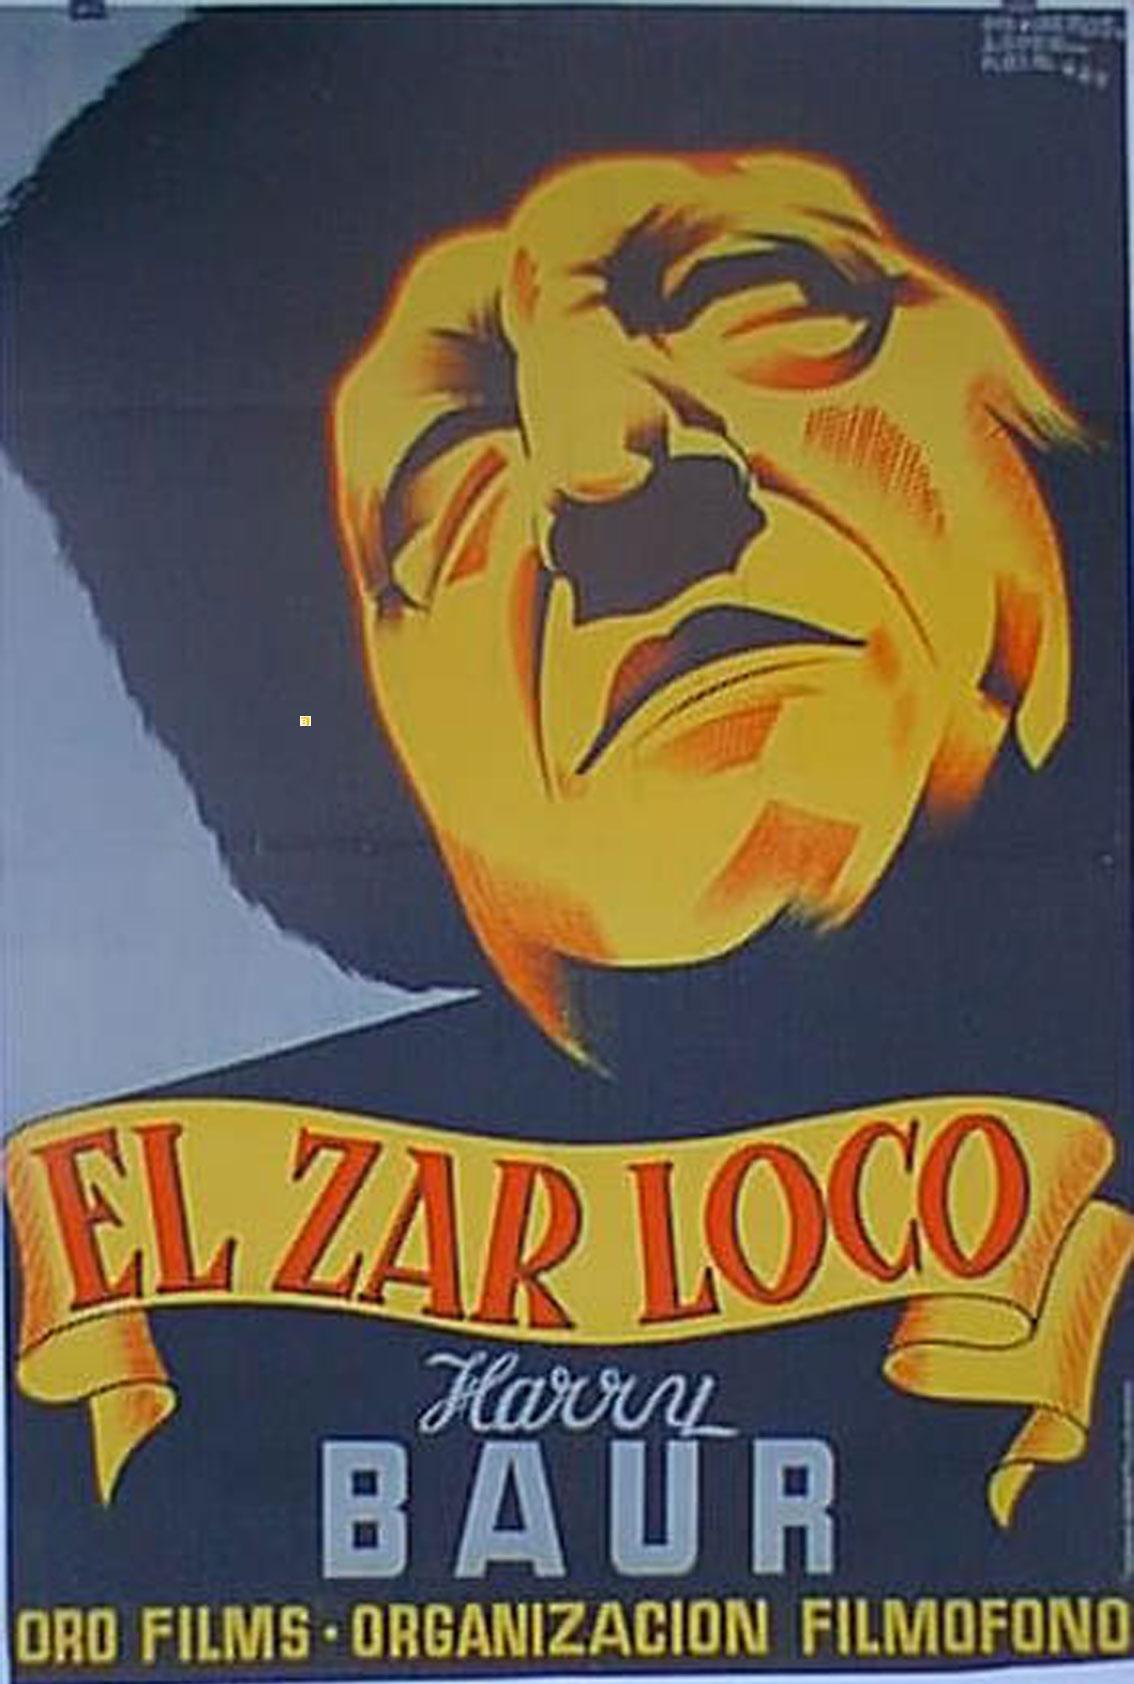 El Zar Loco